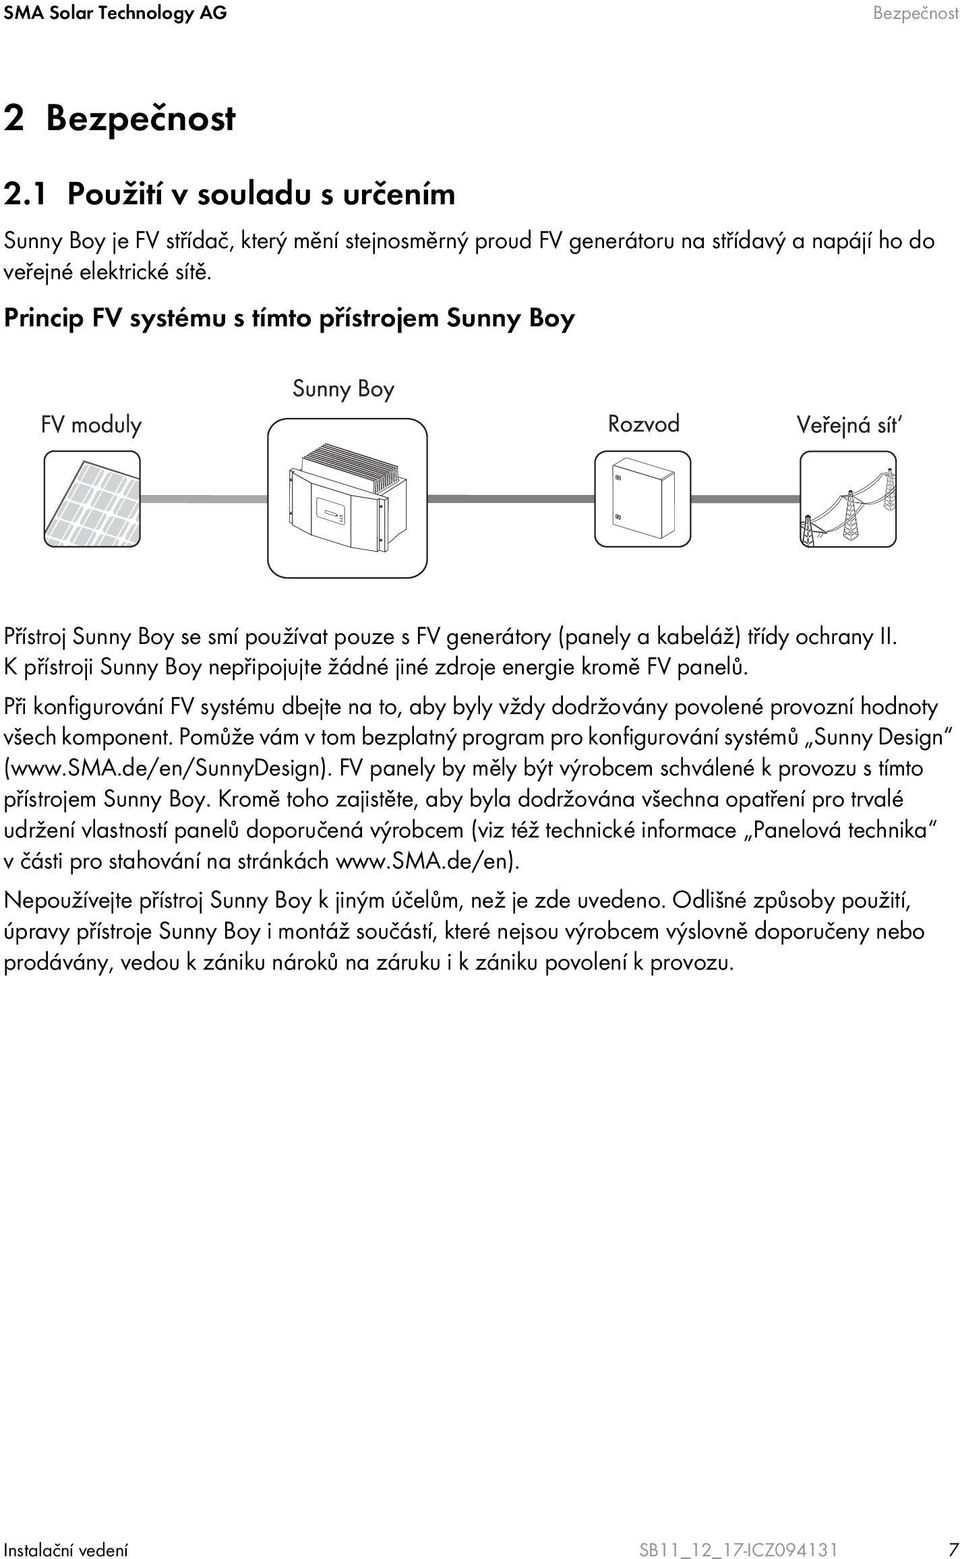 K přístroji Sunny Boy nepřipojujte žádné jiné zdroje energie kromě FV panelů. Při konfigurování FV systému dbejte na to, aby byly vždy dodržovány povolené provozní hodnoty všech komponent.